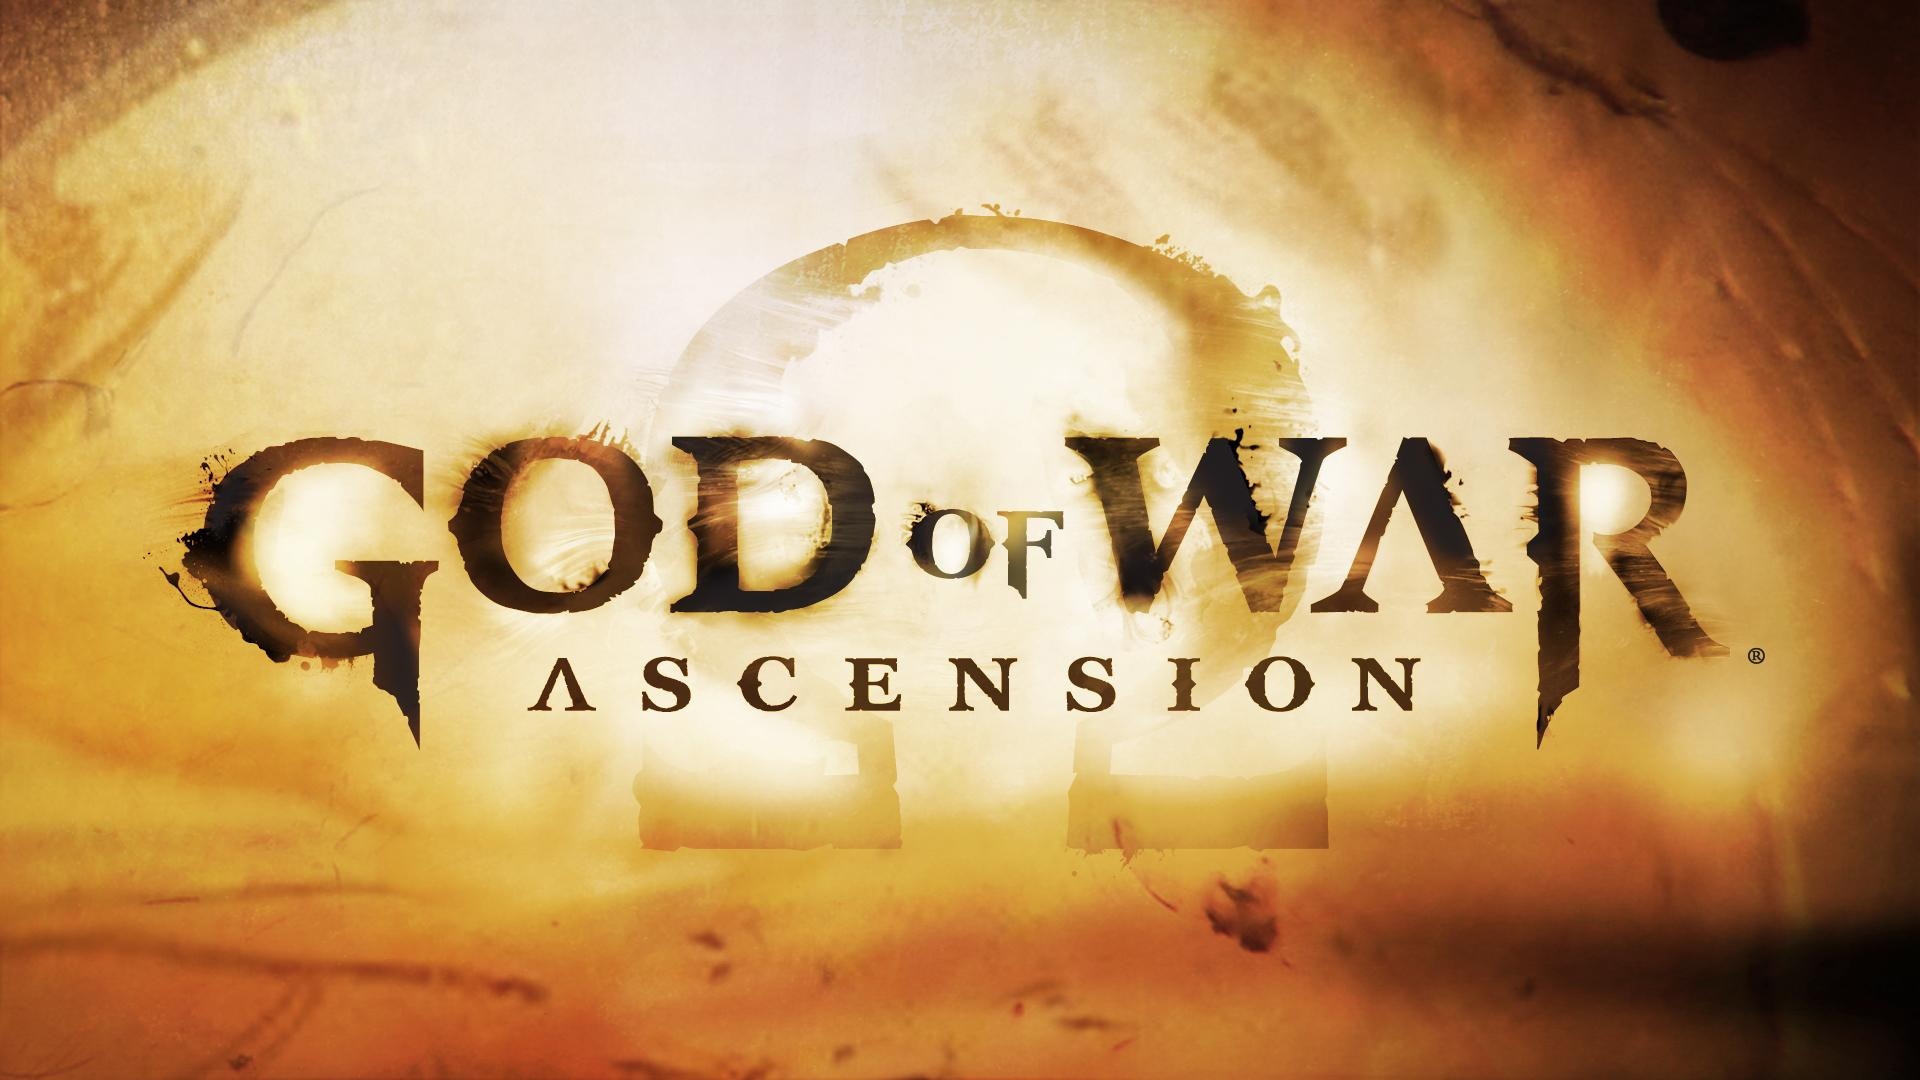 God of War Ascension for 1920 x 1080 HDTV 1080p resolution